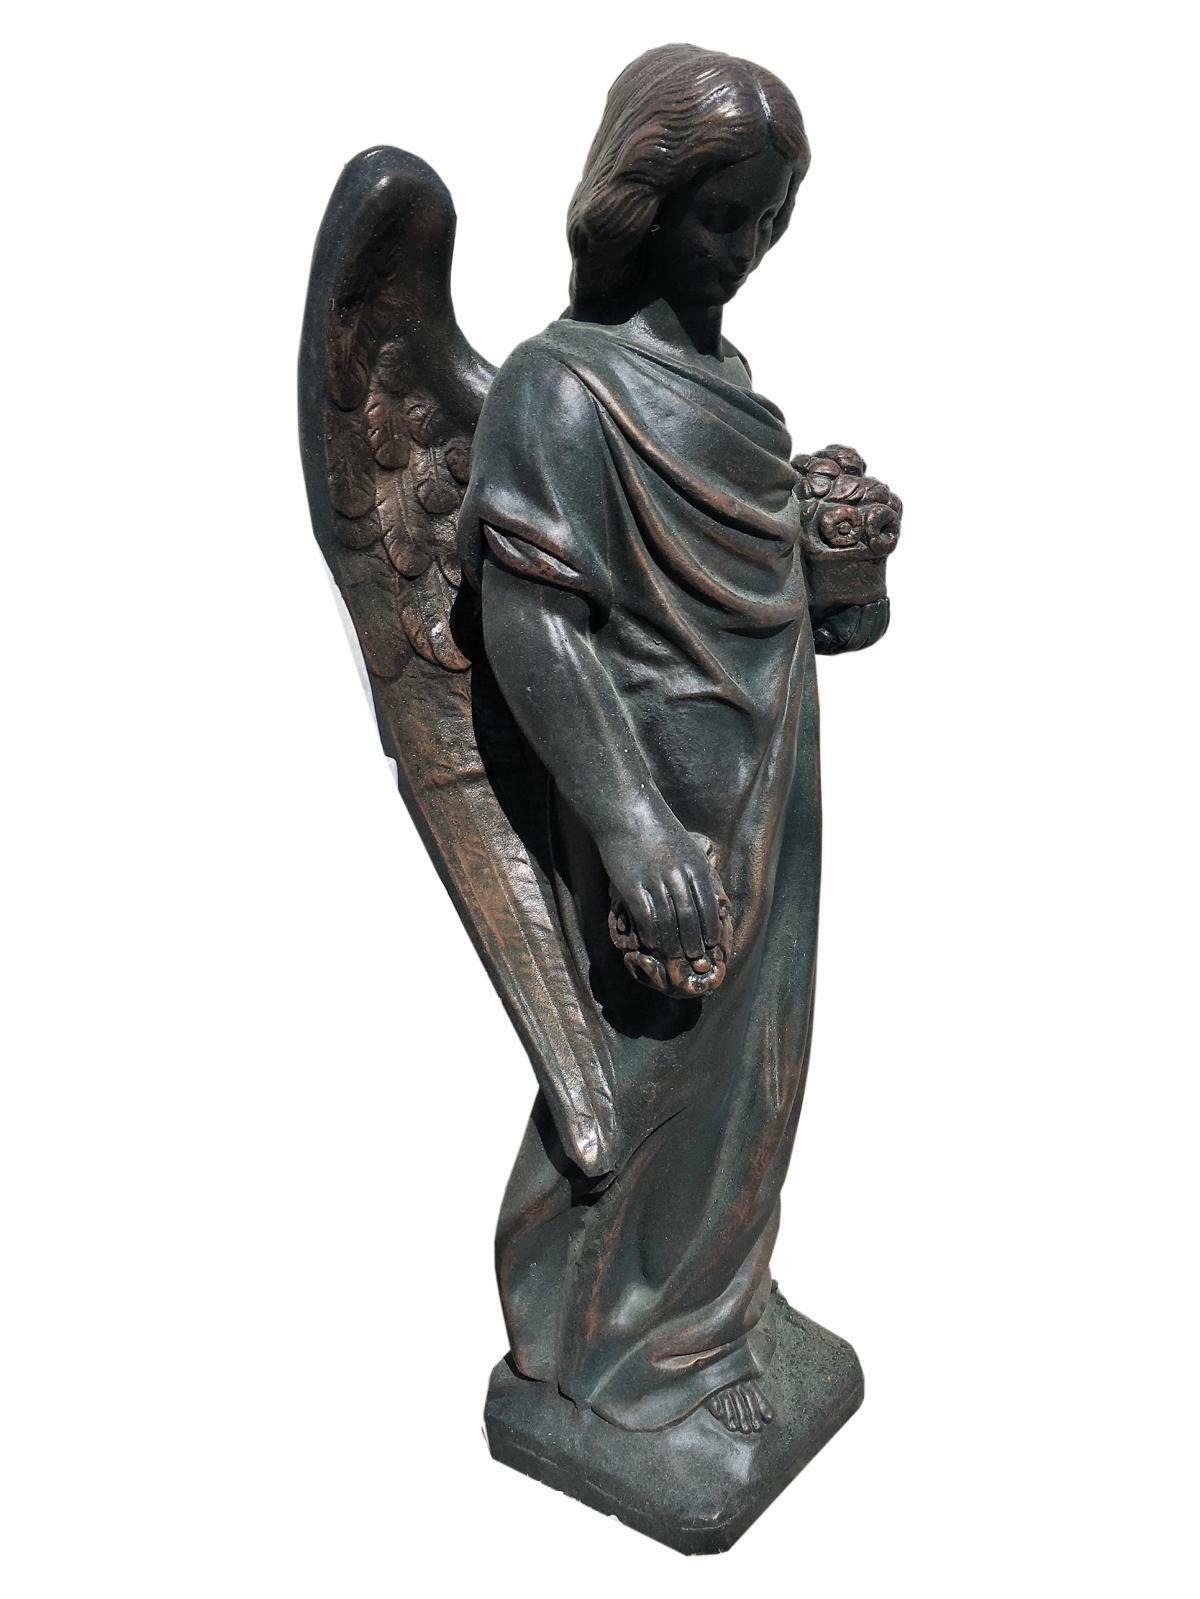 Antikes Wohndesign Gartenfigur Trauender Engel Engelskulptur Steinengel Steinfigur Gartenfigur Graben